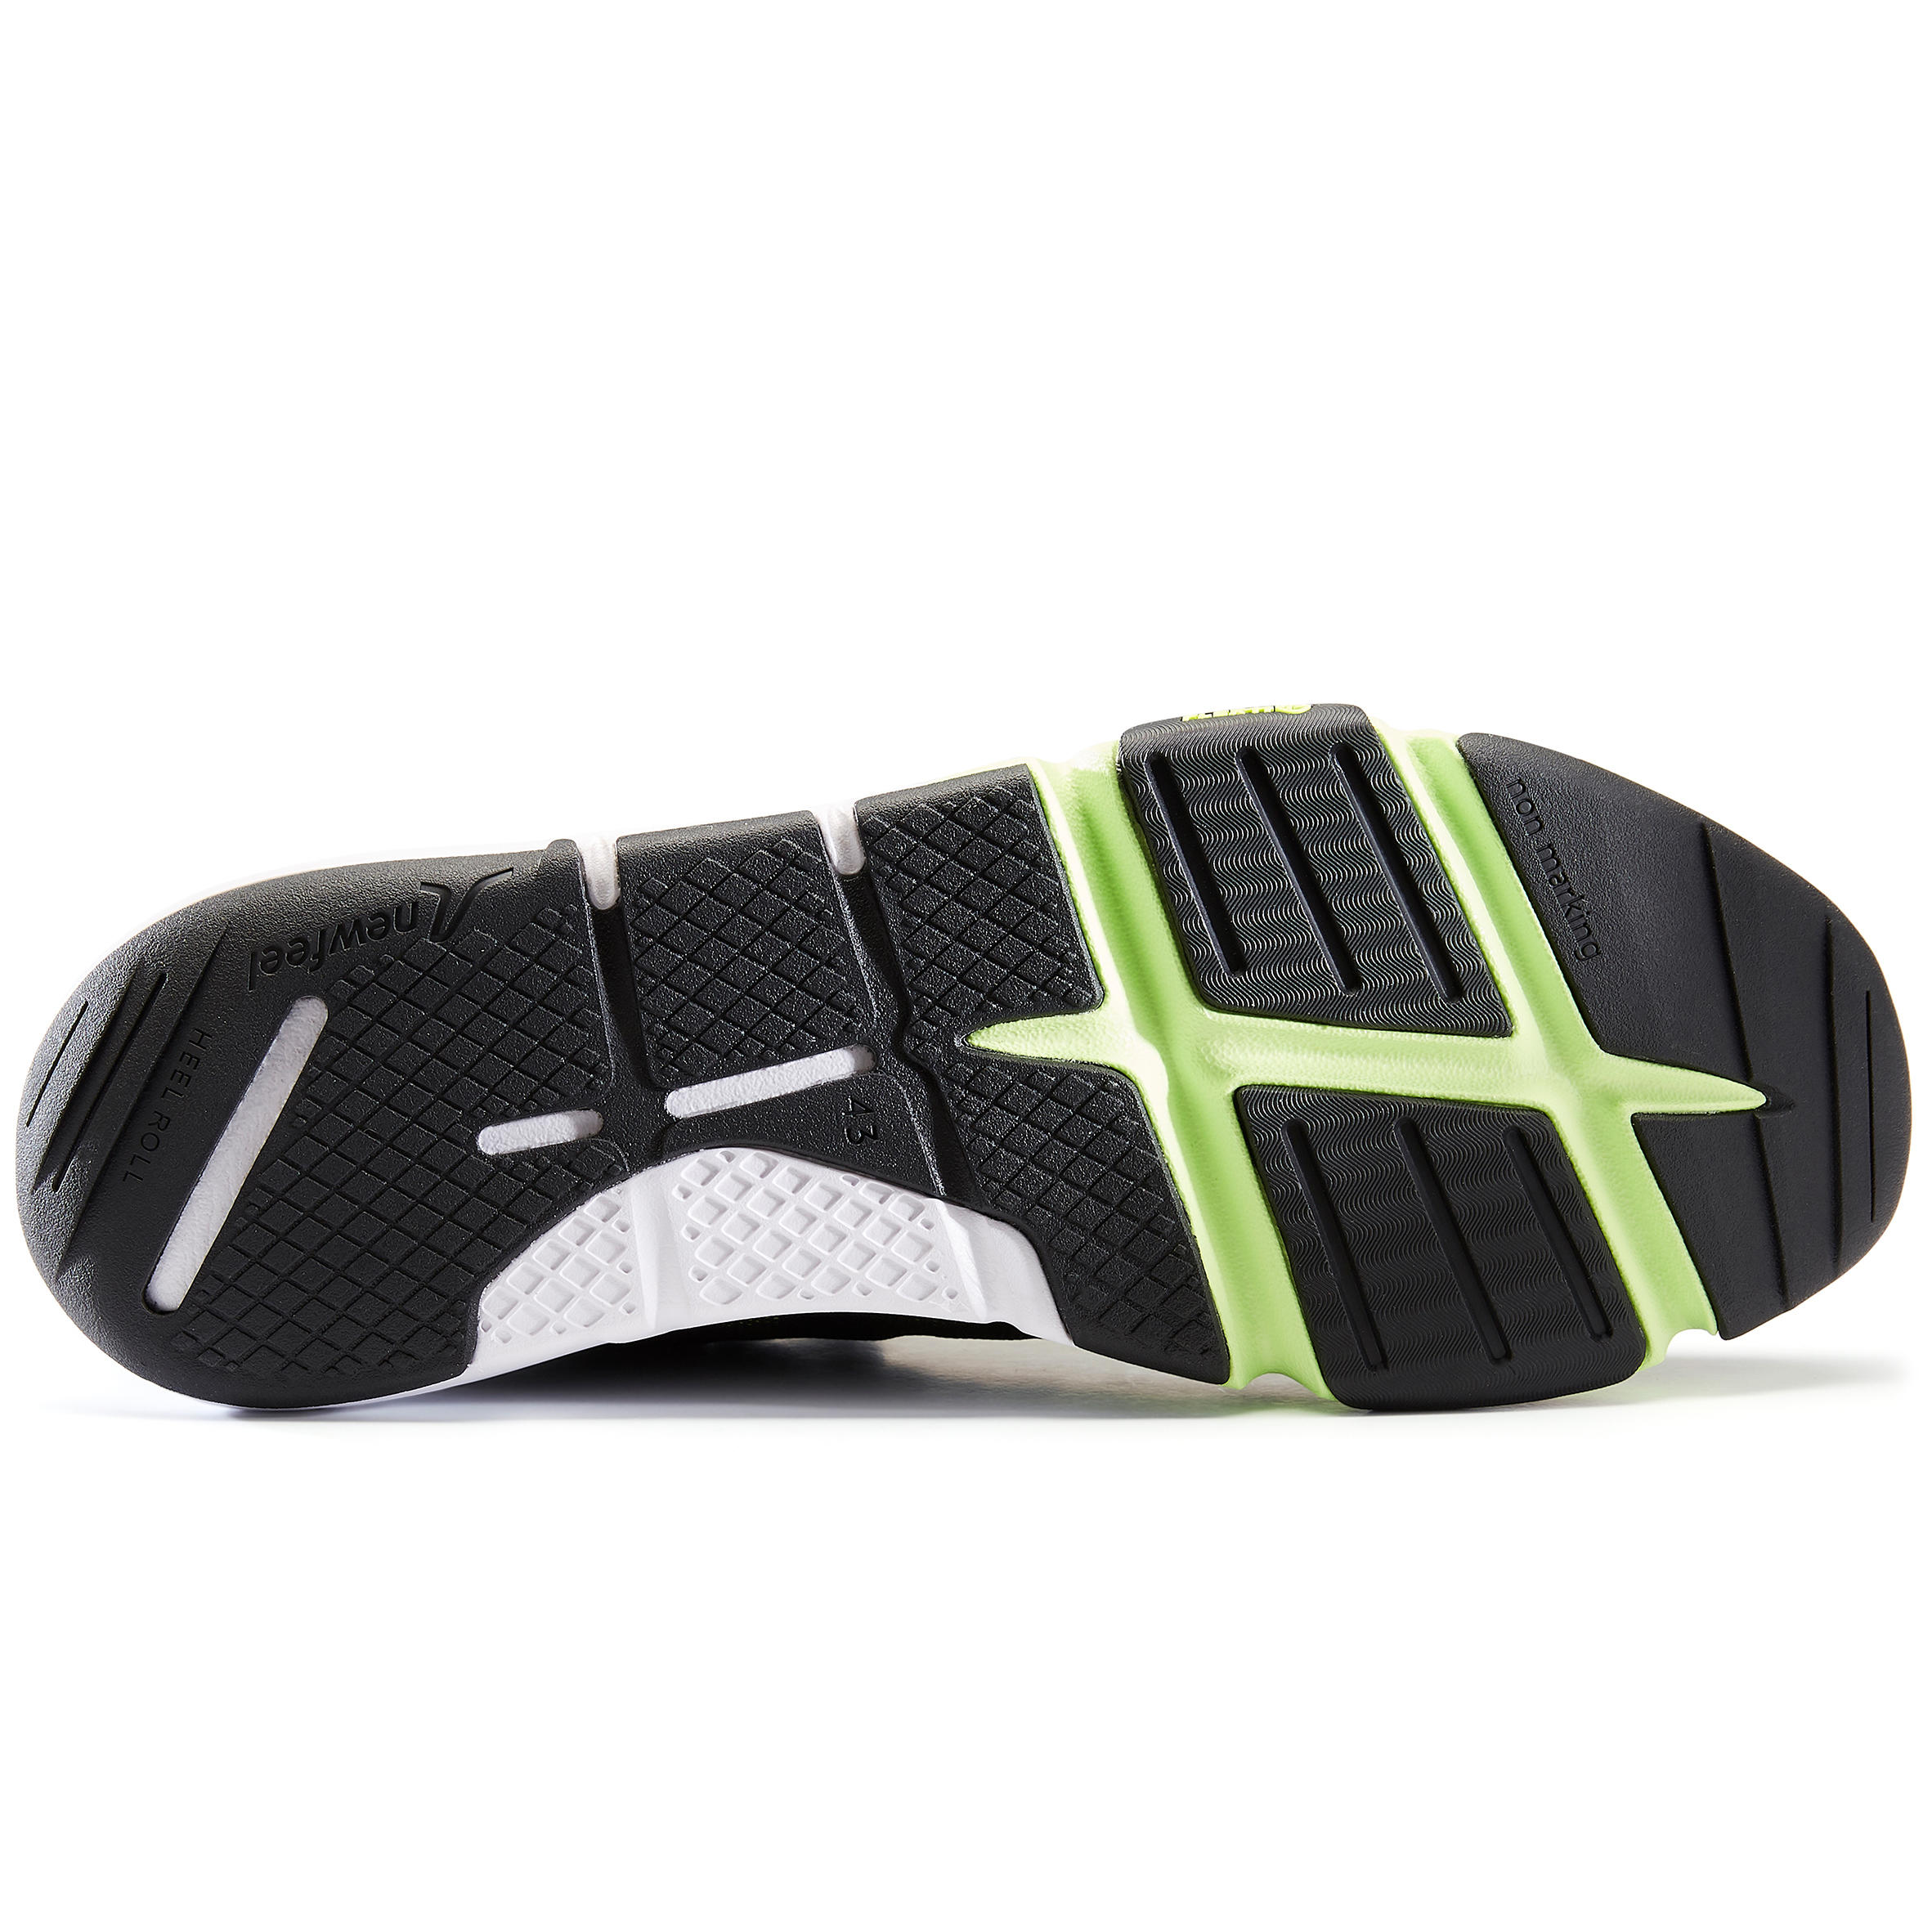 Men's Fitness Walking Shoes PW 540 Flex-H+ - khaki/green 6/10